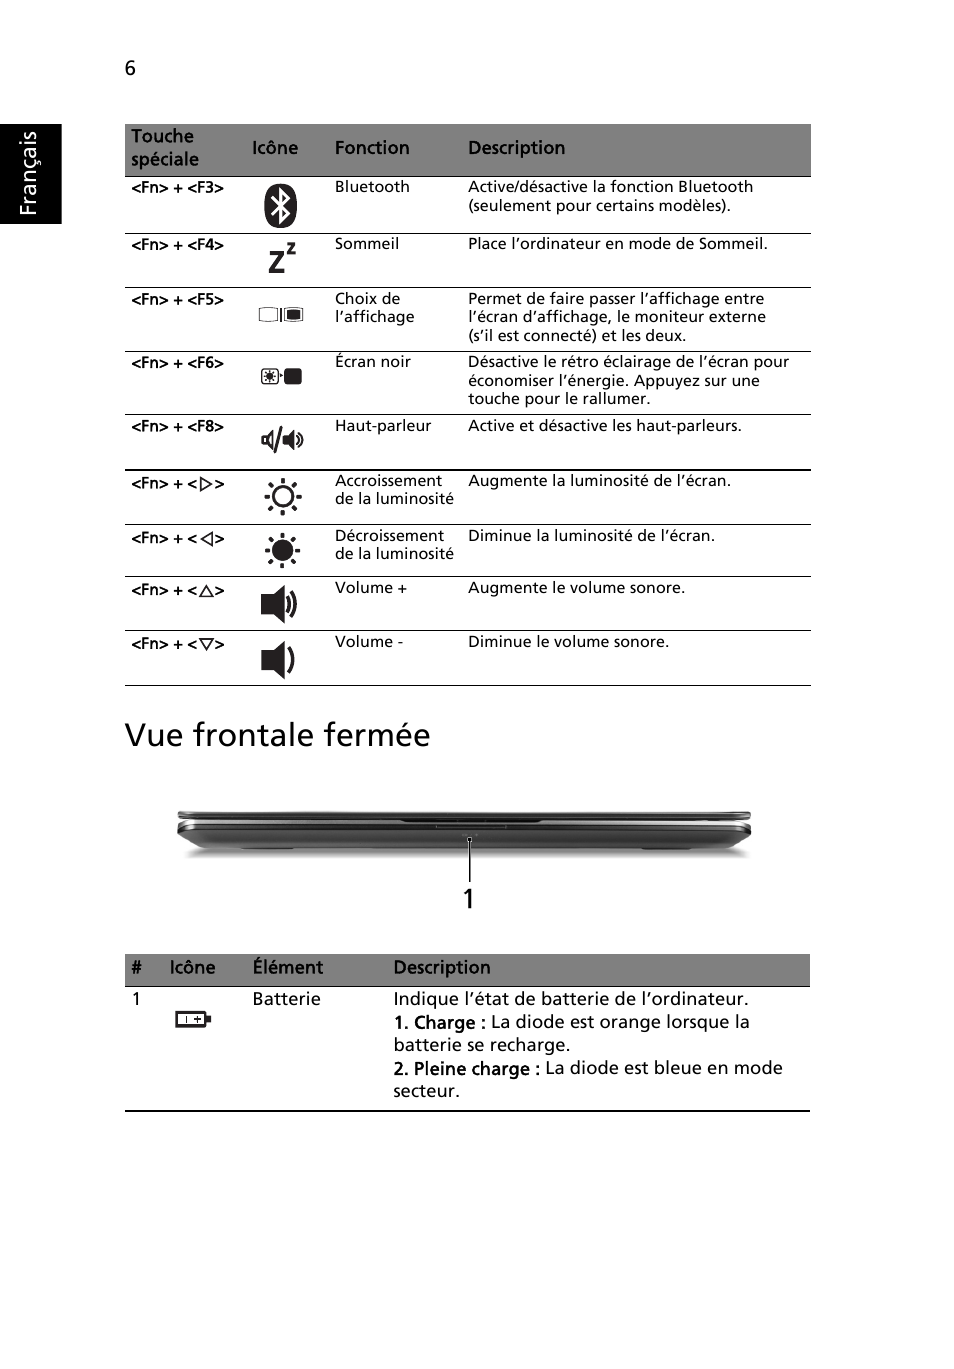 Vue frontale fermée, Français | Acer Aspire 3810TZ Manuel d'utilisation | Page 6 / 11